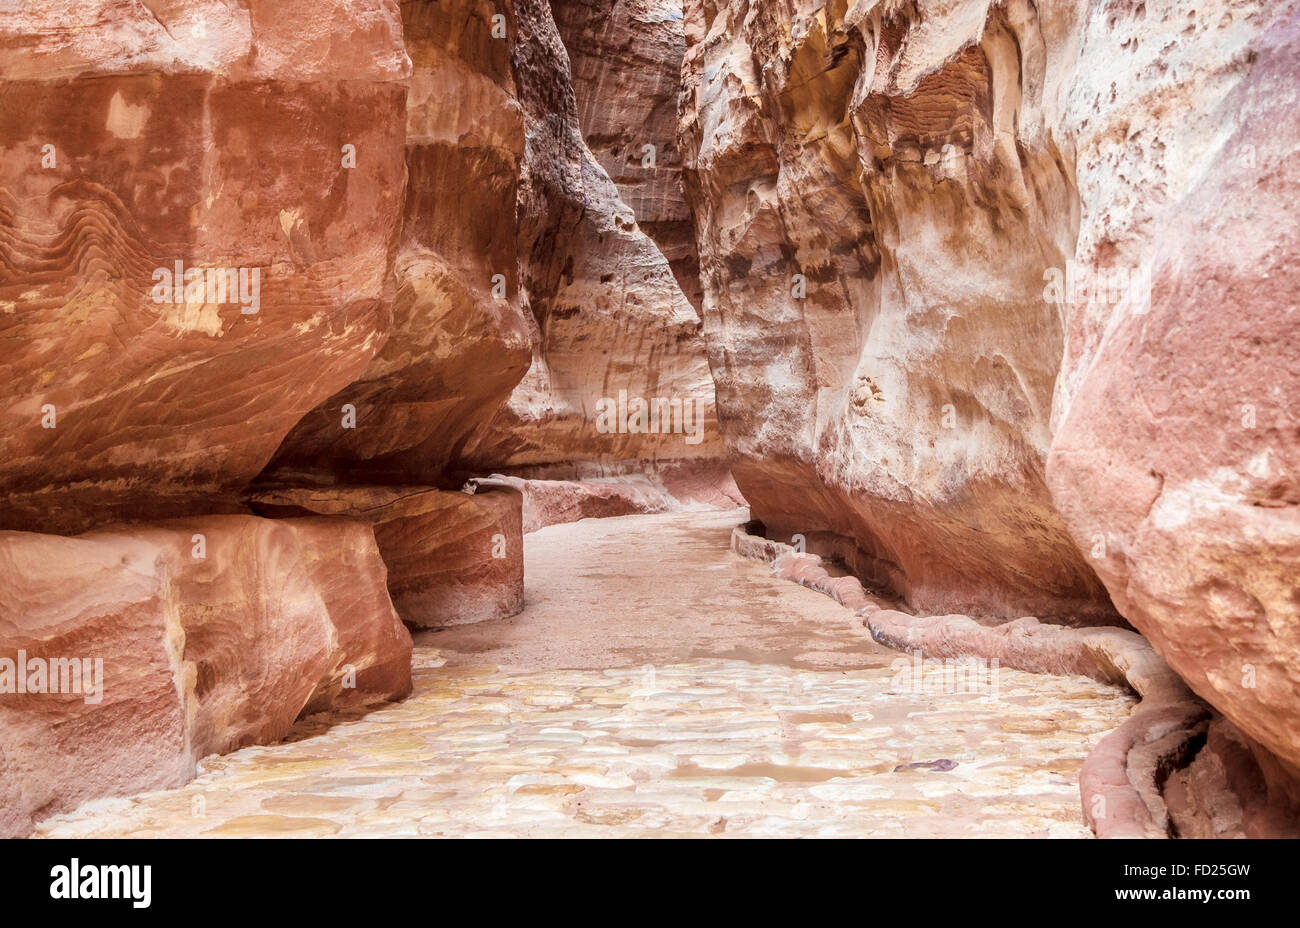 Le Siq, l'encoche étroite-canyon qui sert de couloir d'entrée à la ville cachée de Petra, Jordanie, Banque D'Images